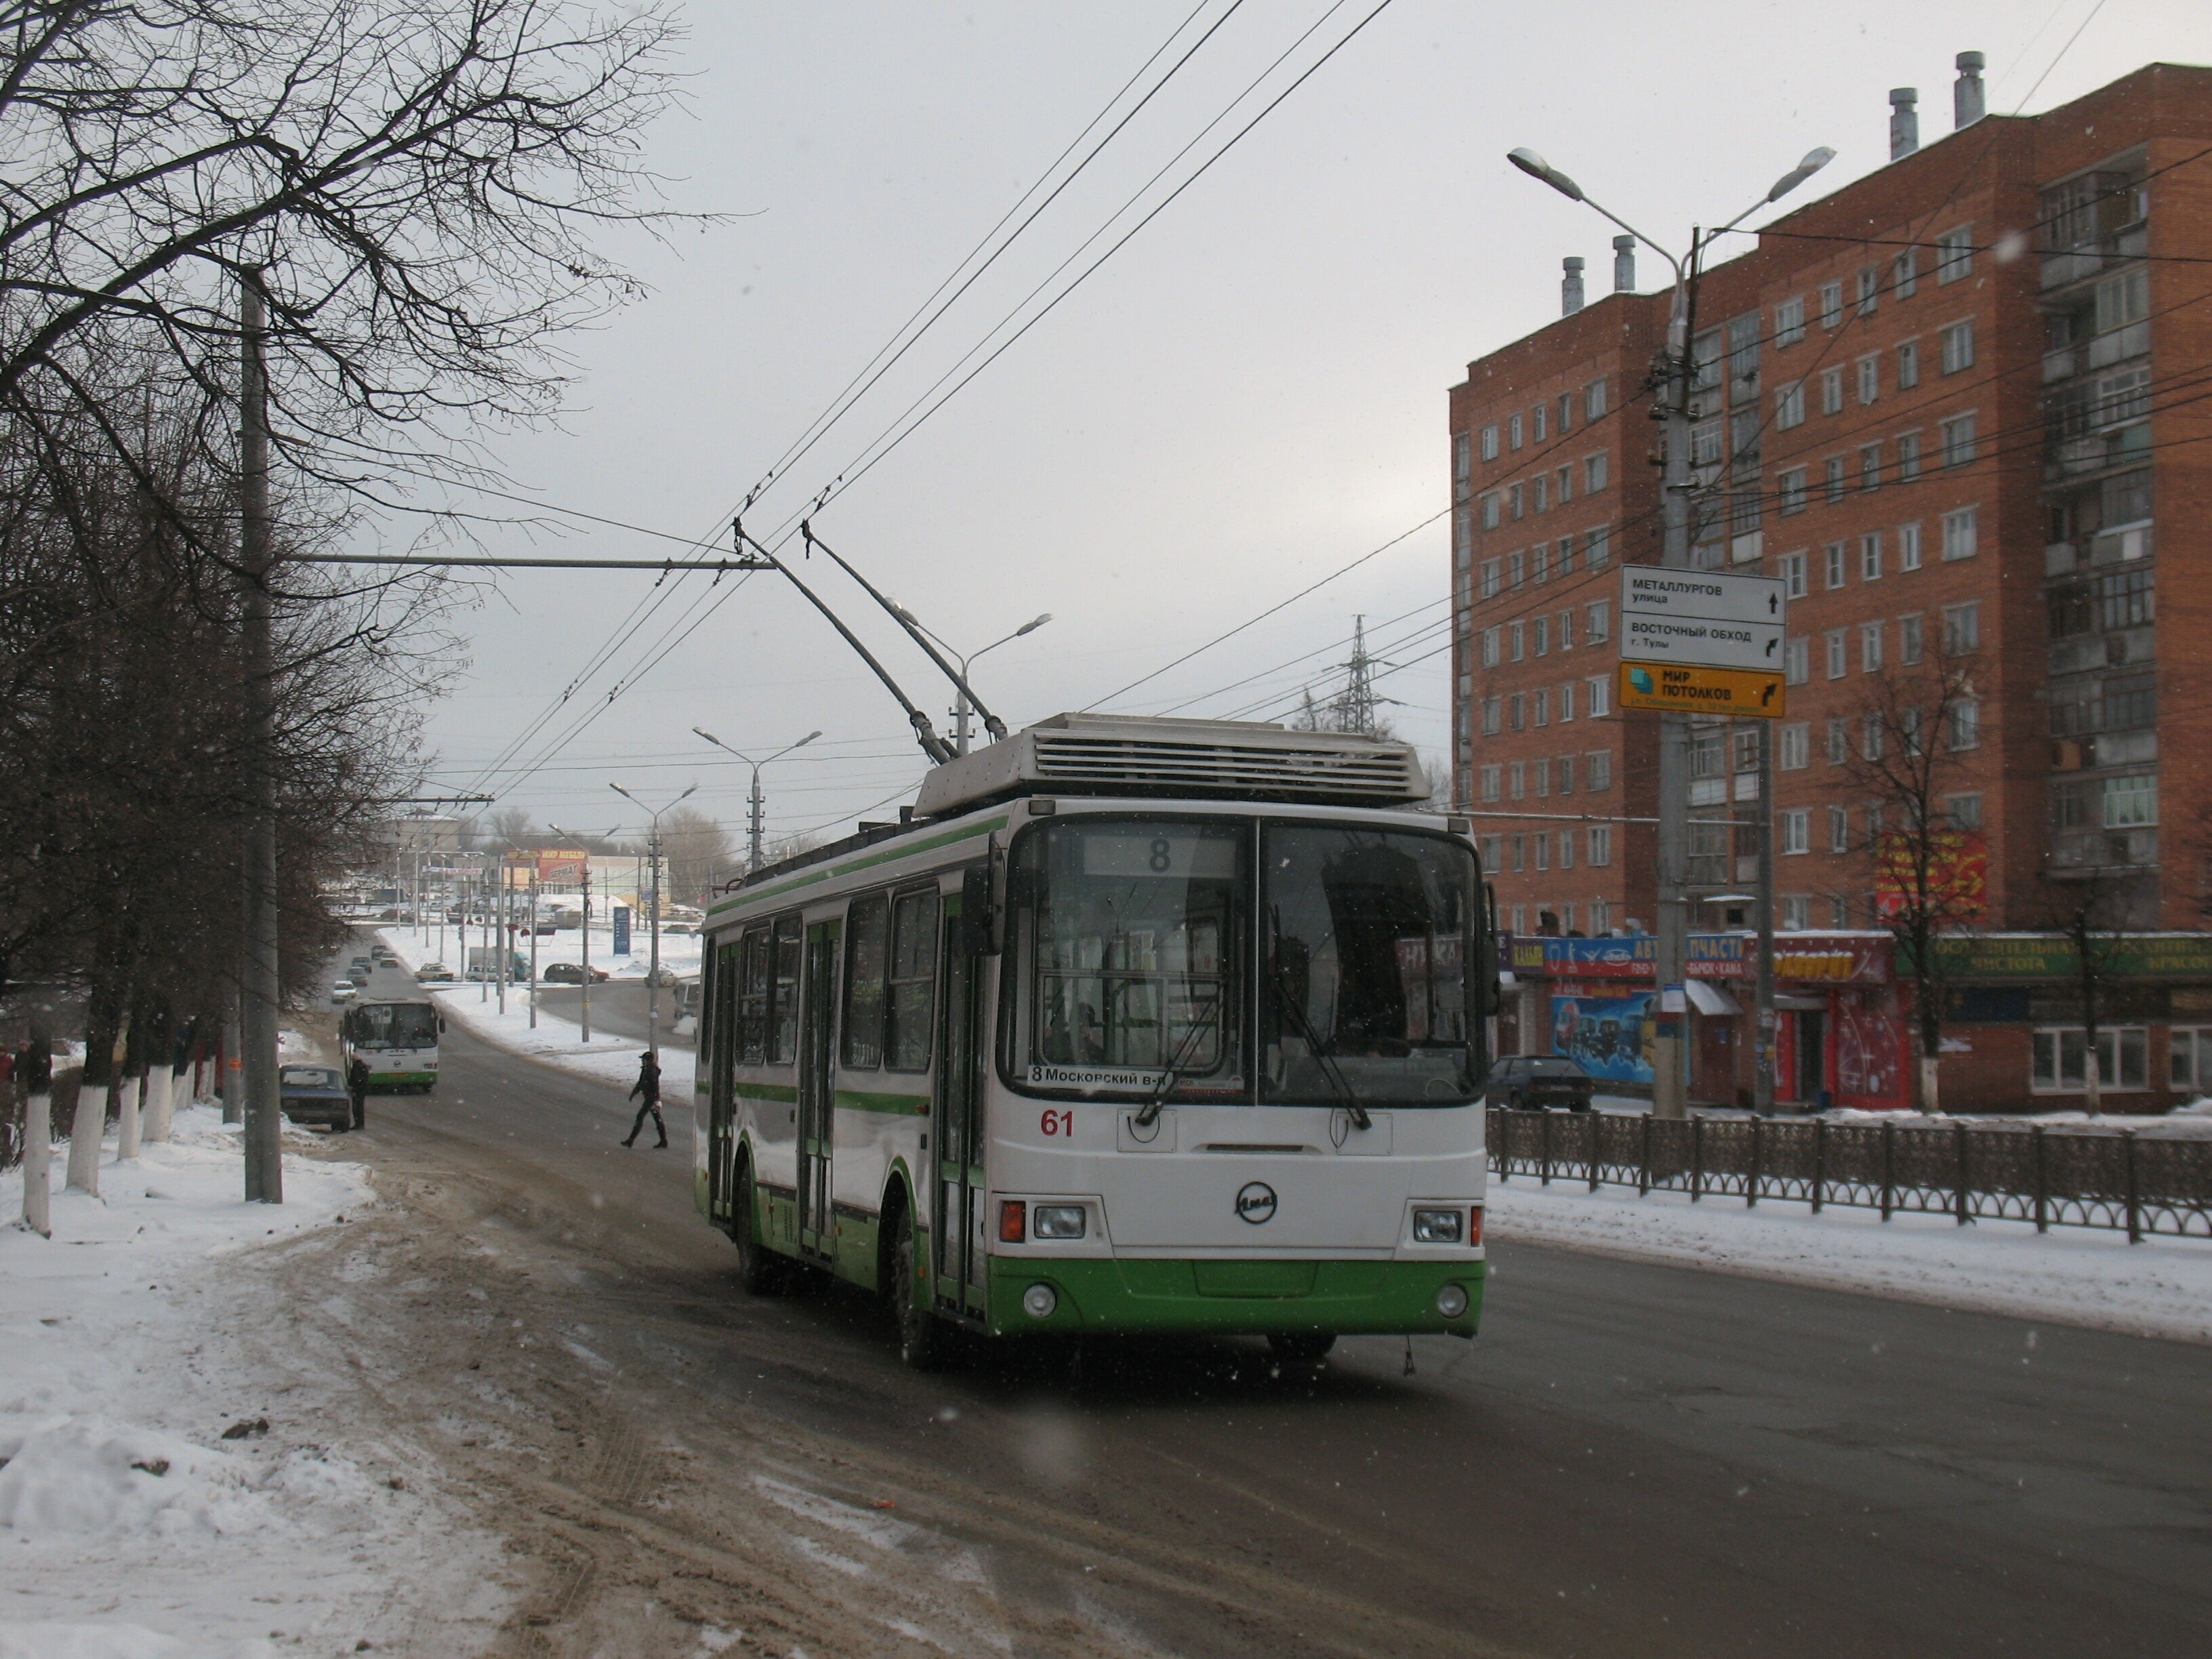 Троллейбус 61 ЛиАЗ-5280 построен в 2006. Новая троллейбусная линия к Ложевой улице, работавшая в 2010-х годах